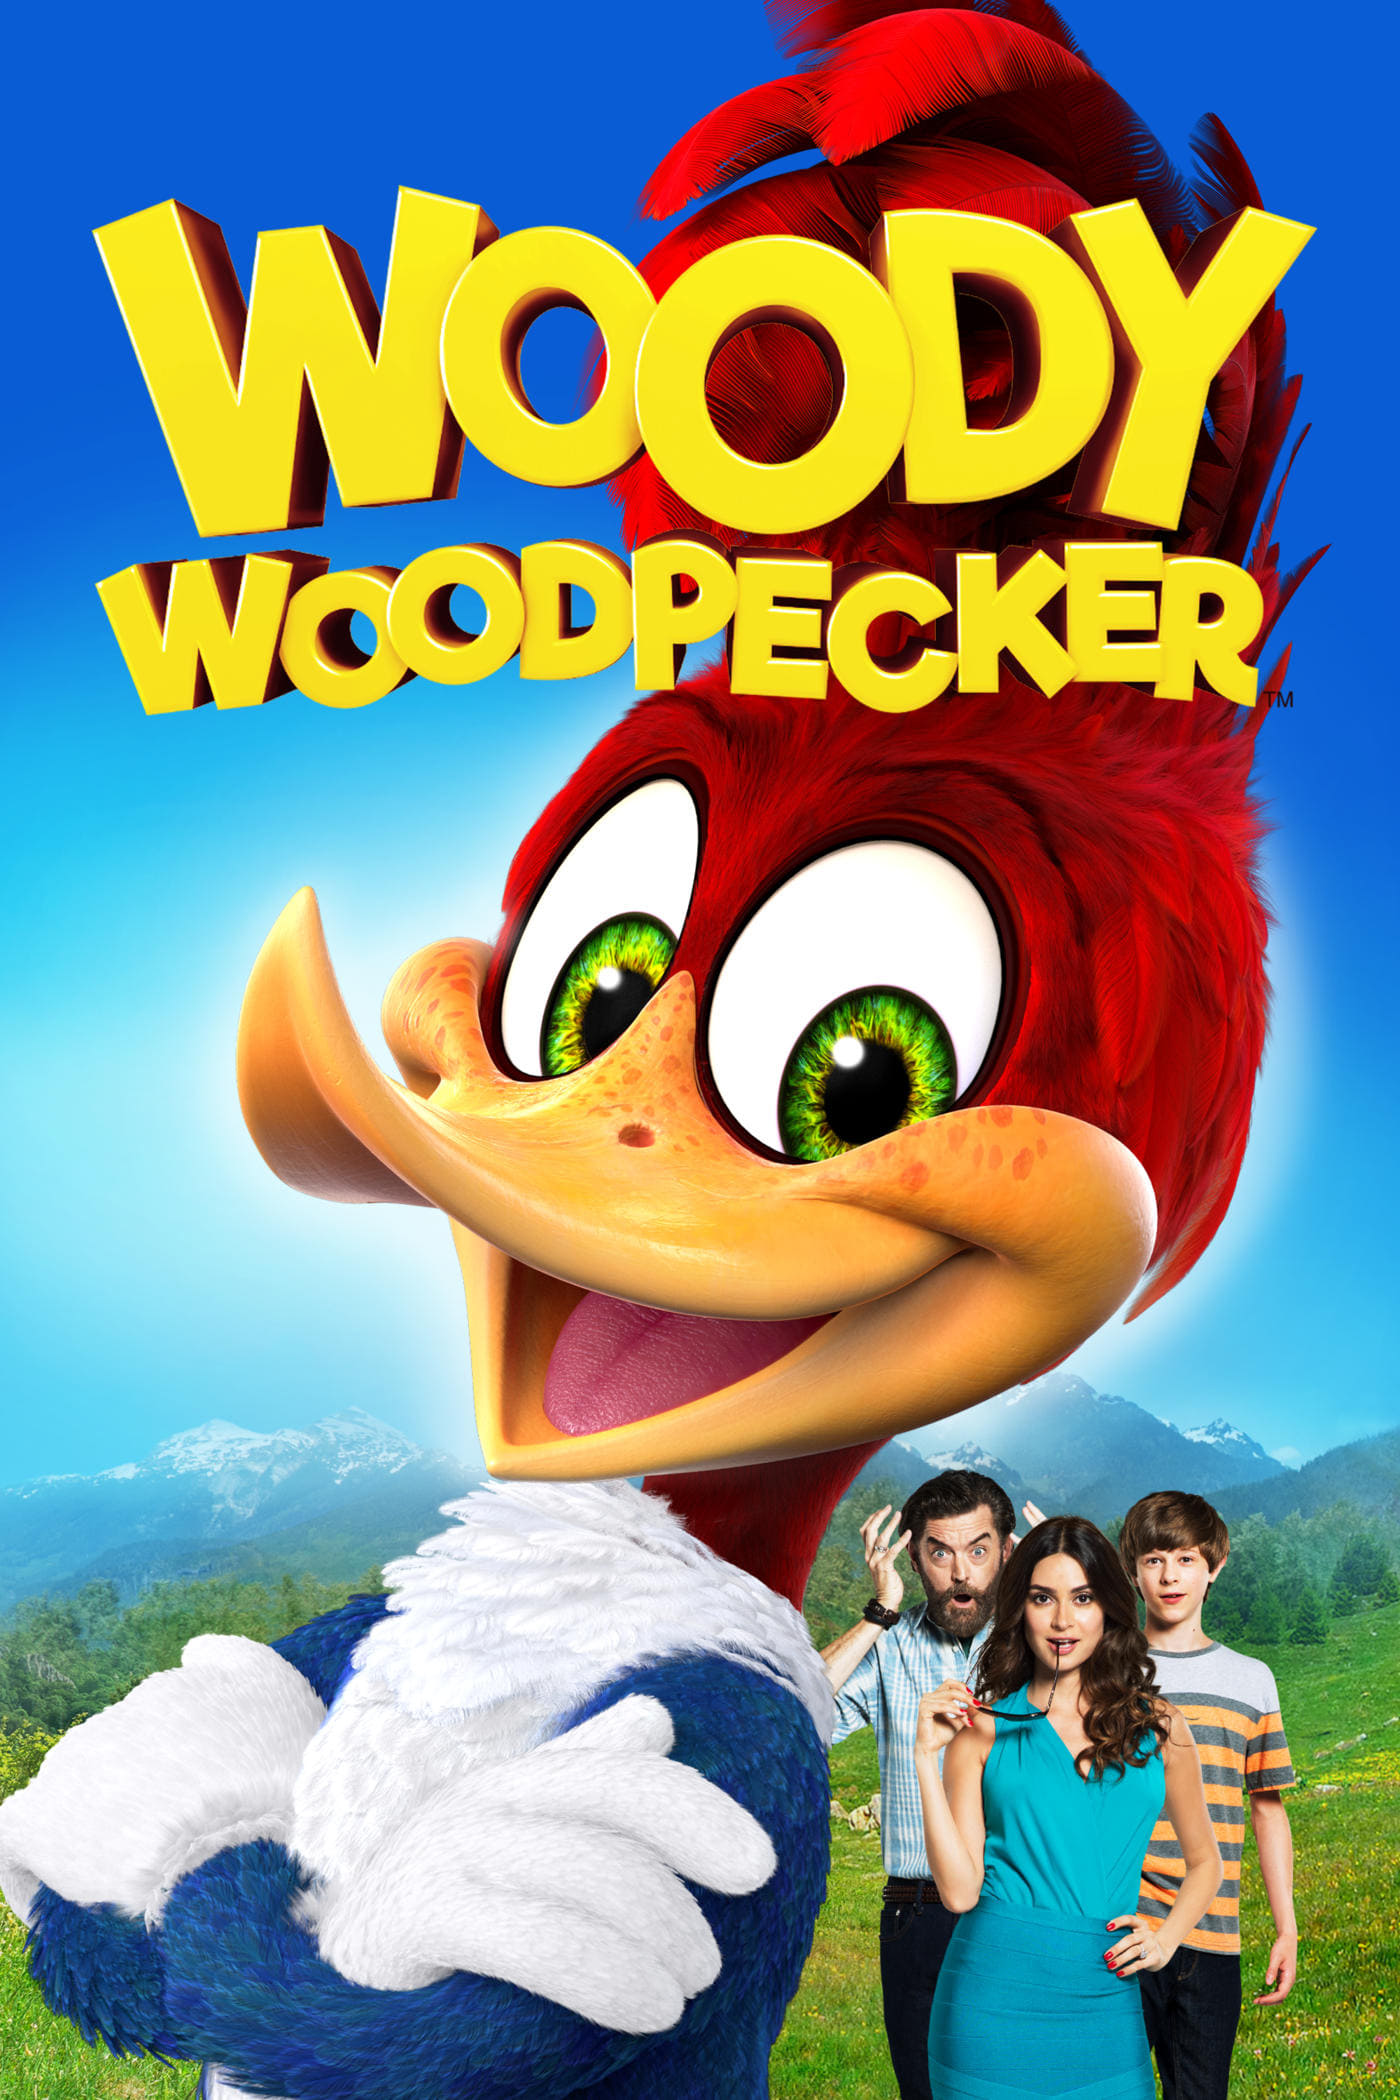 دانلود فیلم Woody Woodpecker 2017 با دوبله فارسی